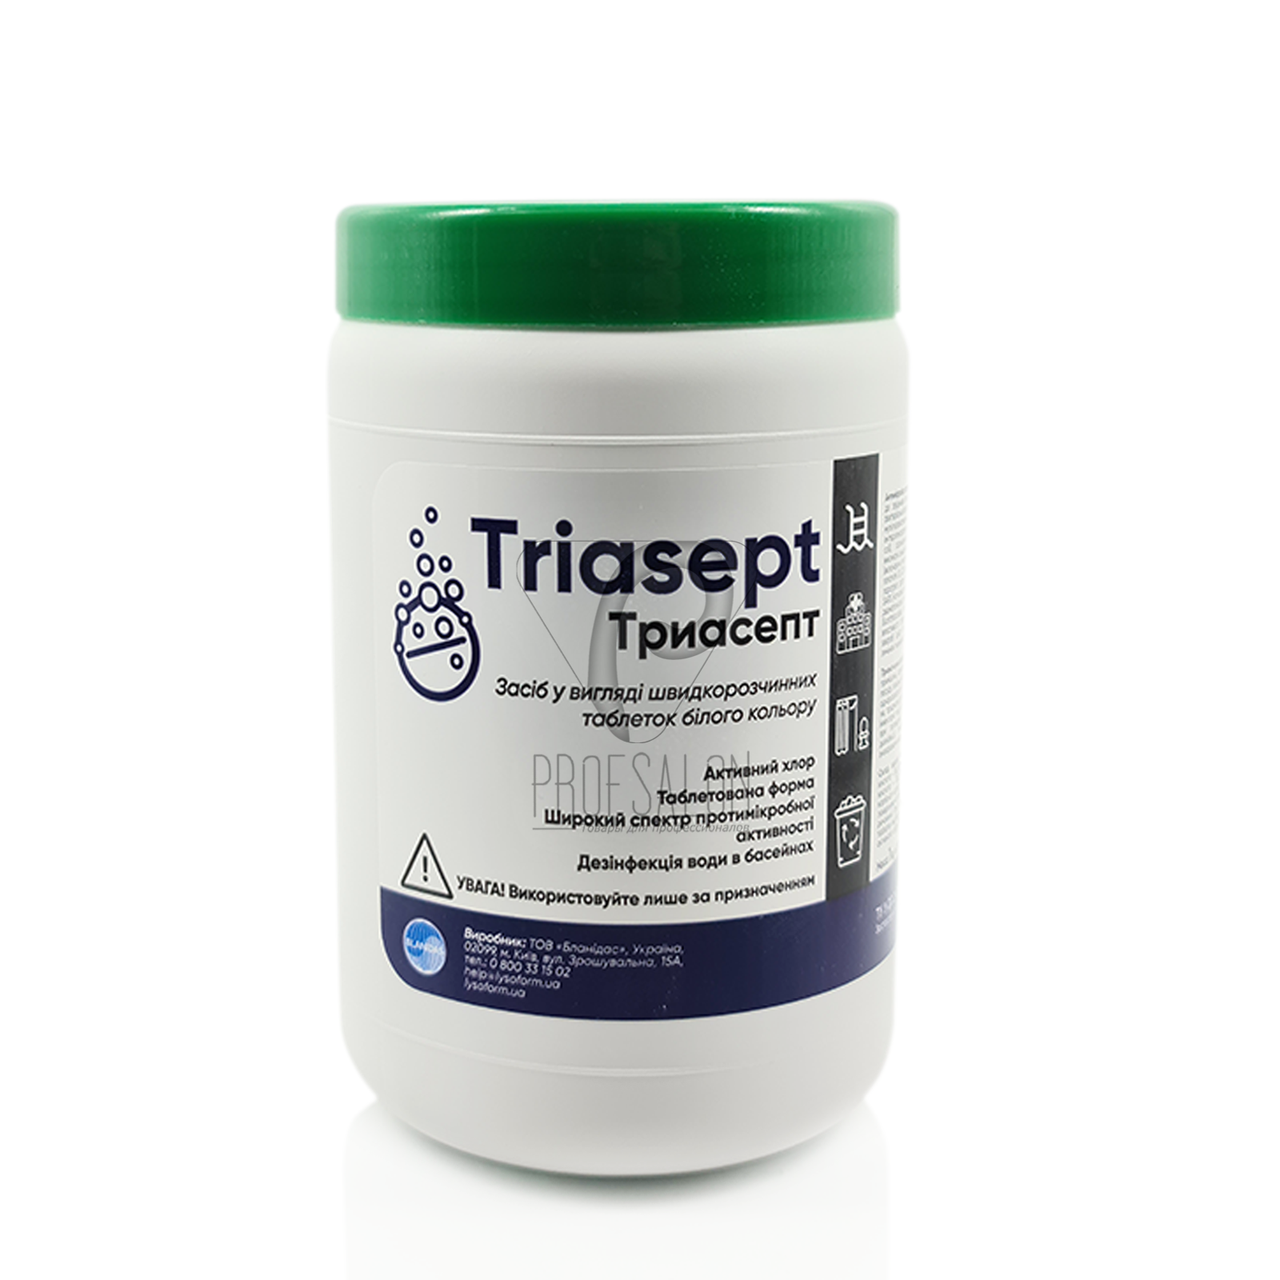 Тріасепт (таблетки), 1 кг засіб для дезінфекції, знезараження використаних медичних виробів